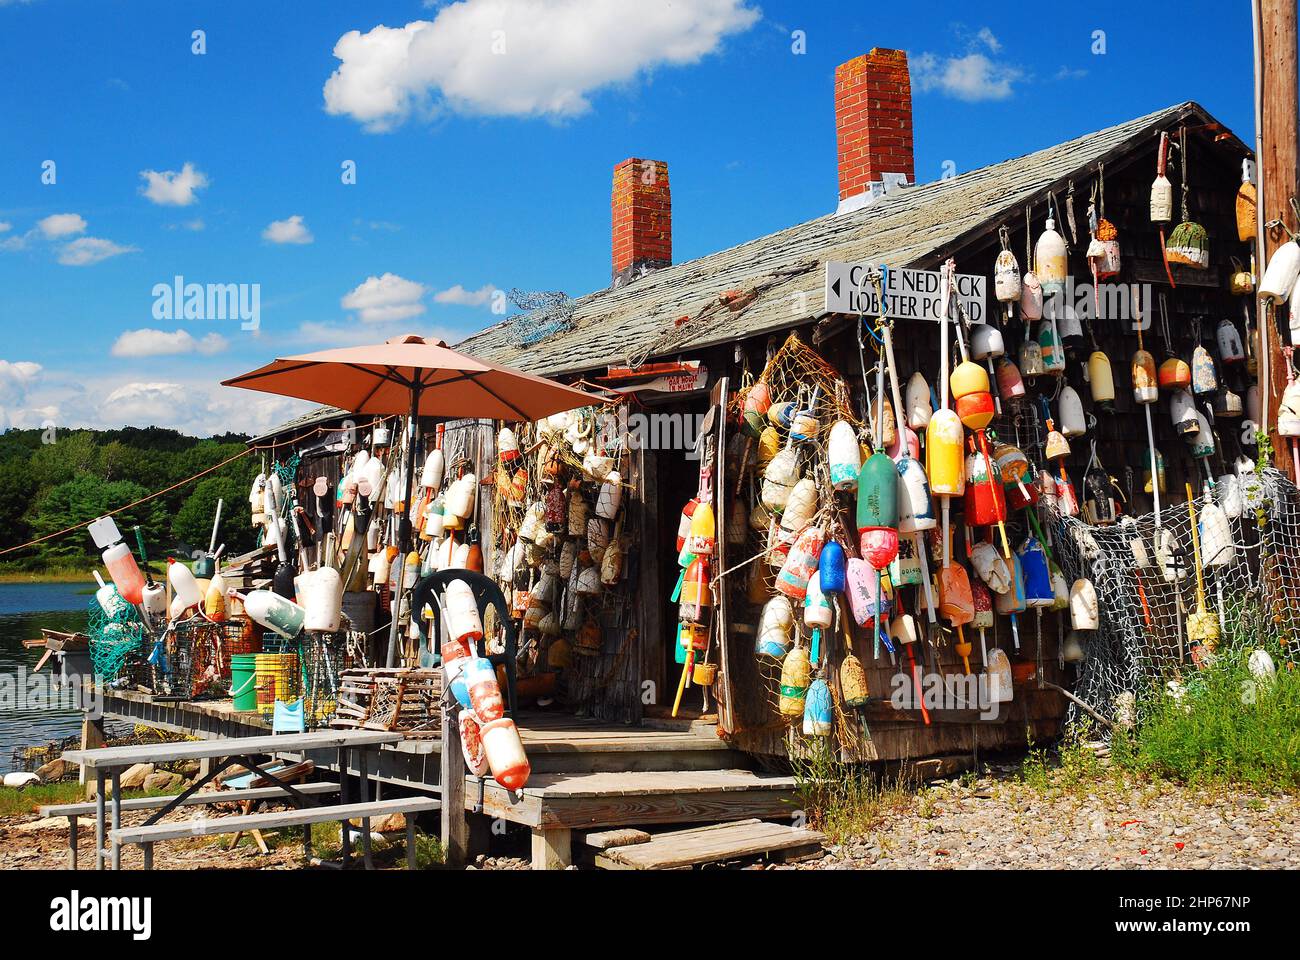 Eine Hummerhütte in Maine ist mit zahlreichen Hummerbojen dekoriert Stockfoto